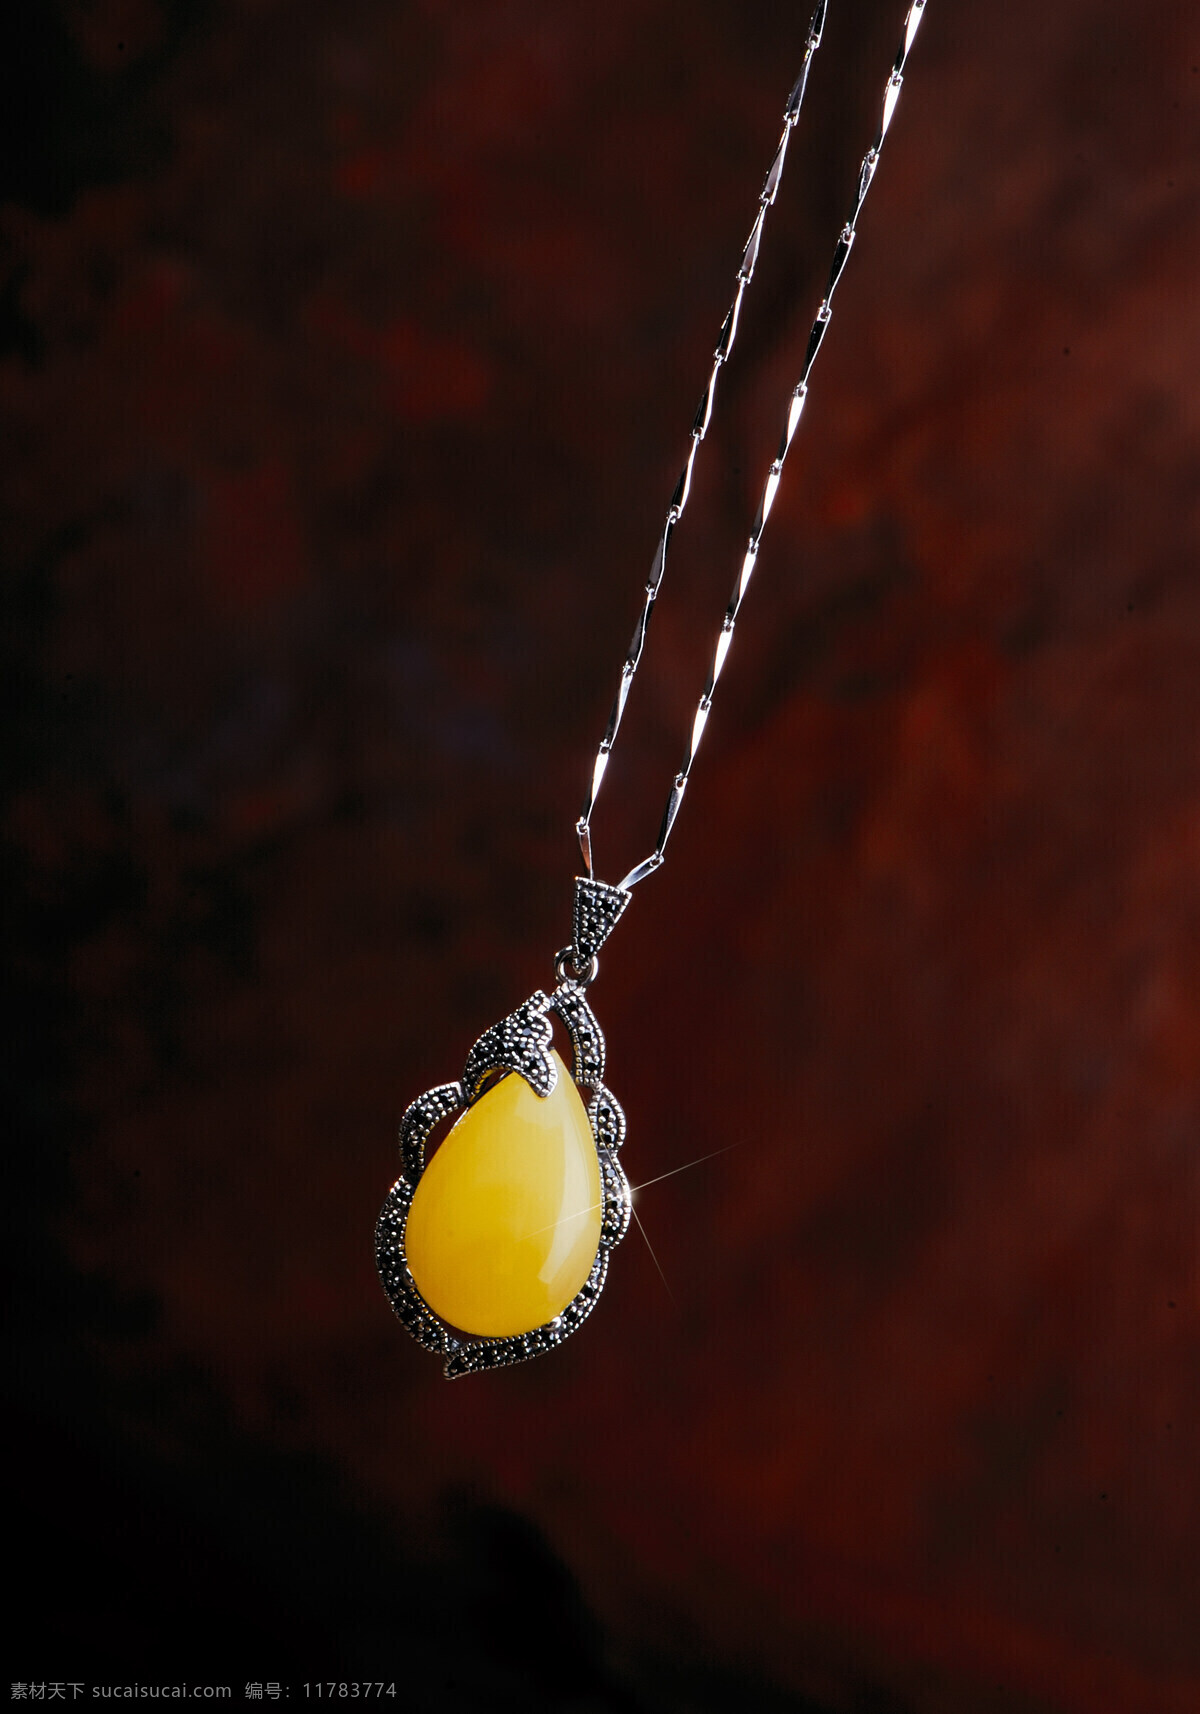 琥珀 蜜蜡 挂件 吊坠 石头记 玉石 宝玉 珠宝 石头记产品 高清晰琥珀 饰品 玉石产品 文化艺术